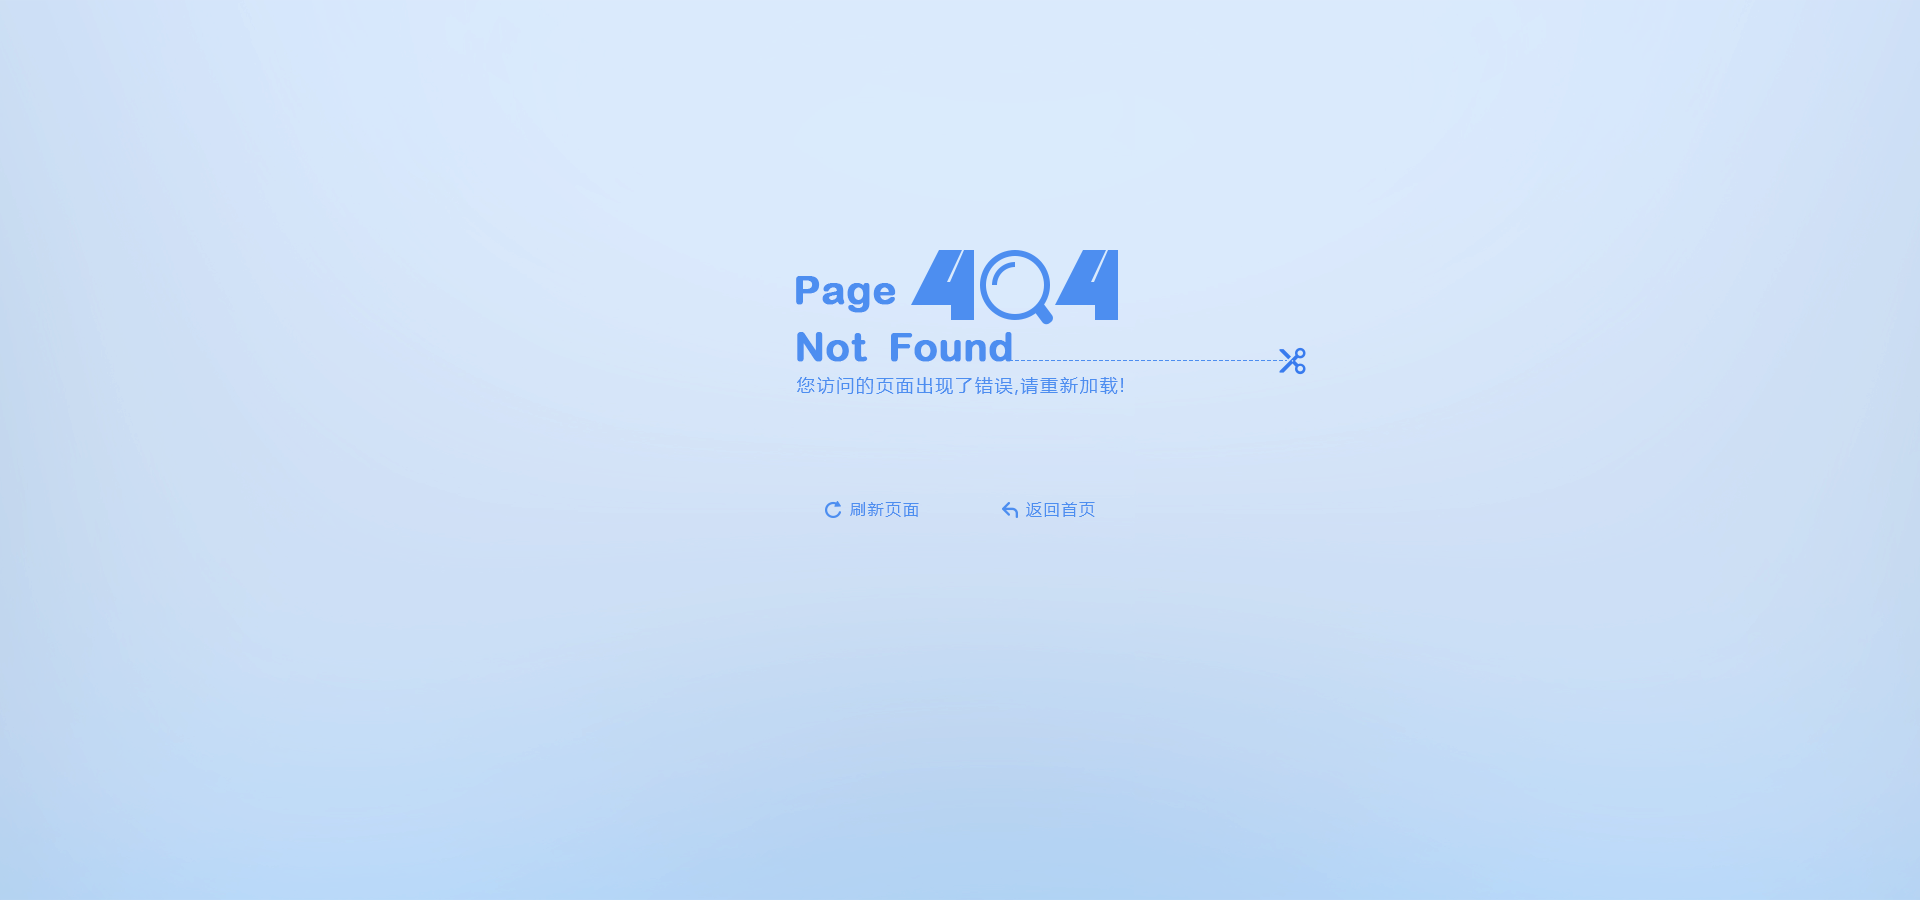 404自定义页面设置的5大方法论-funion